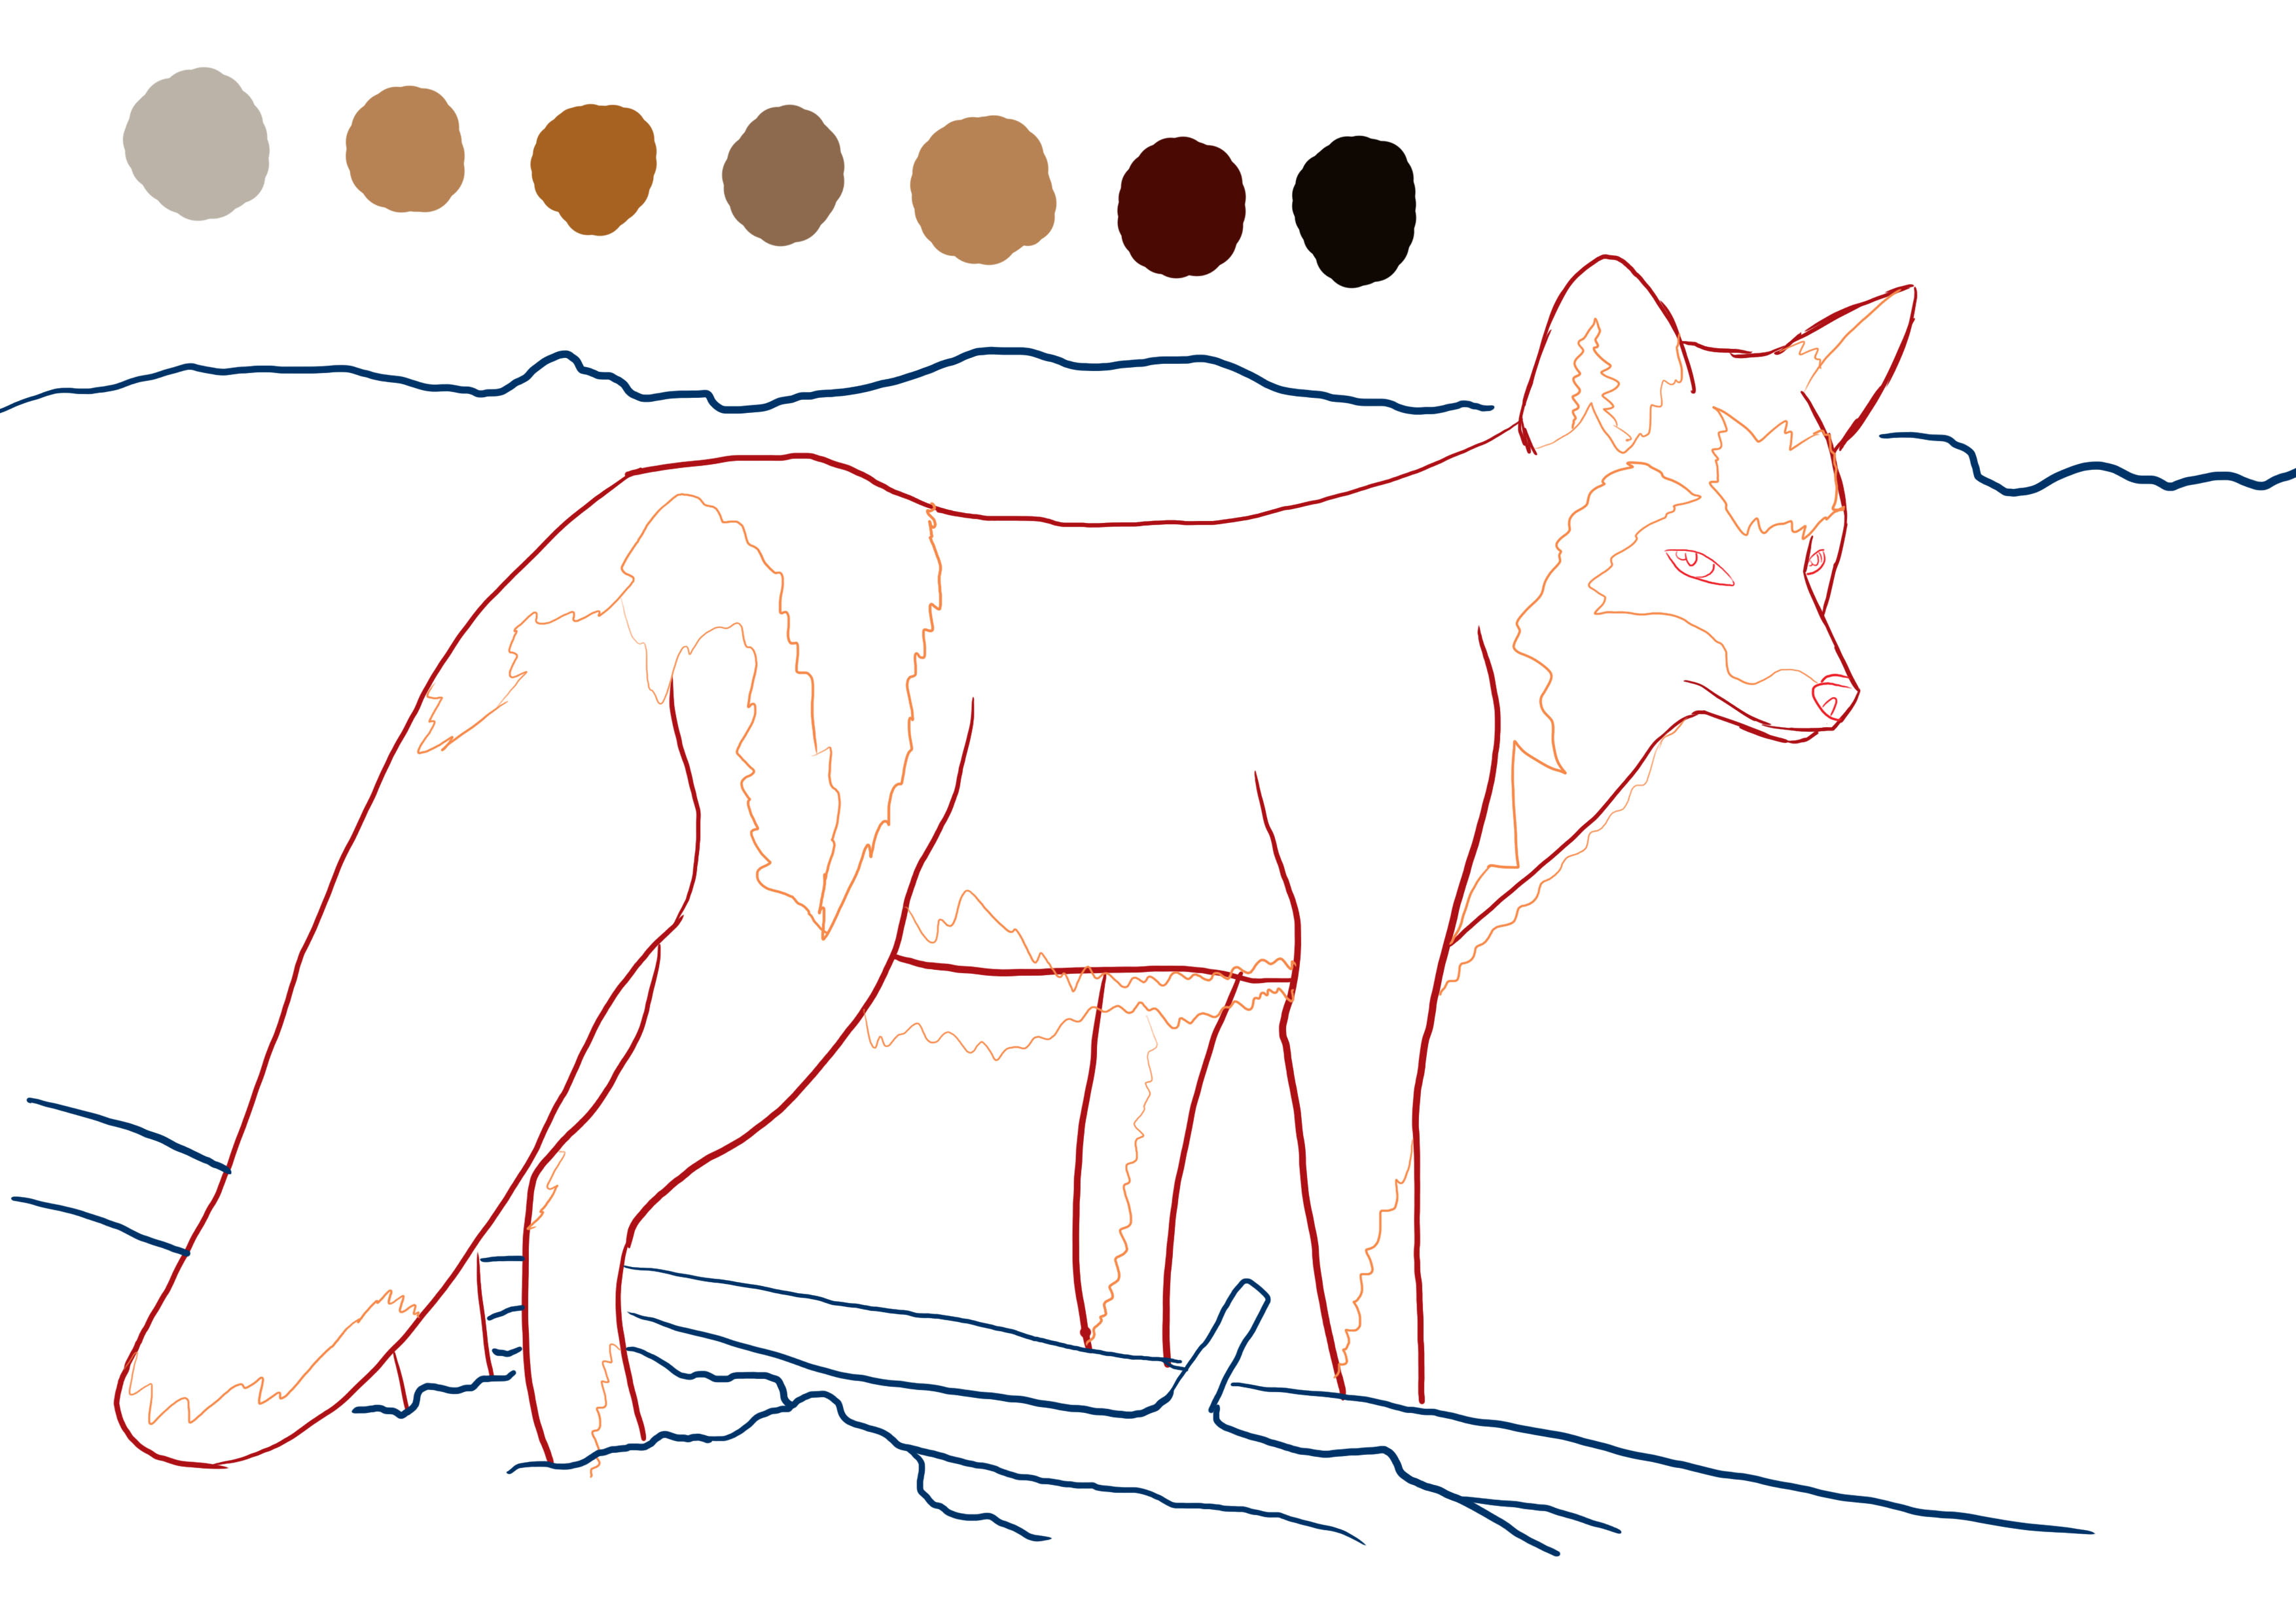 choix des couleurs pour finaliser le dessin de renard